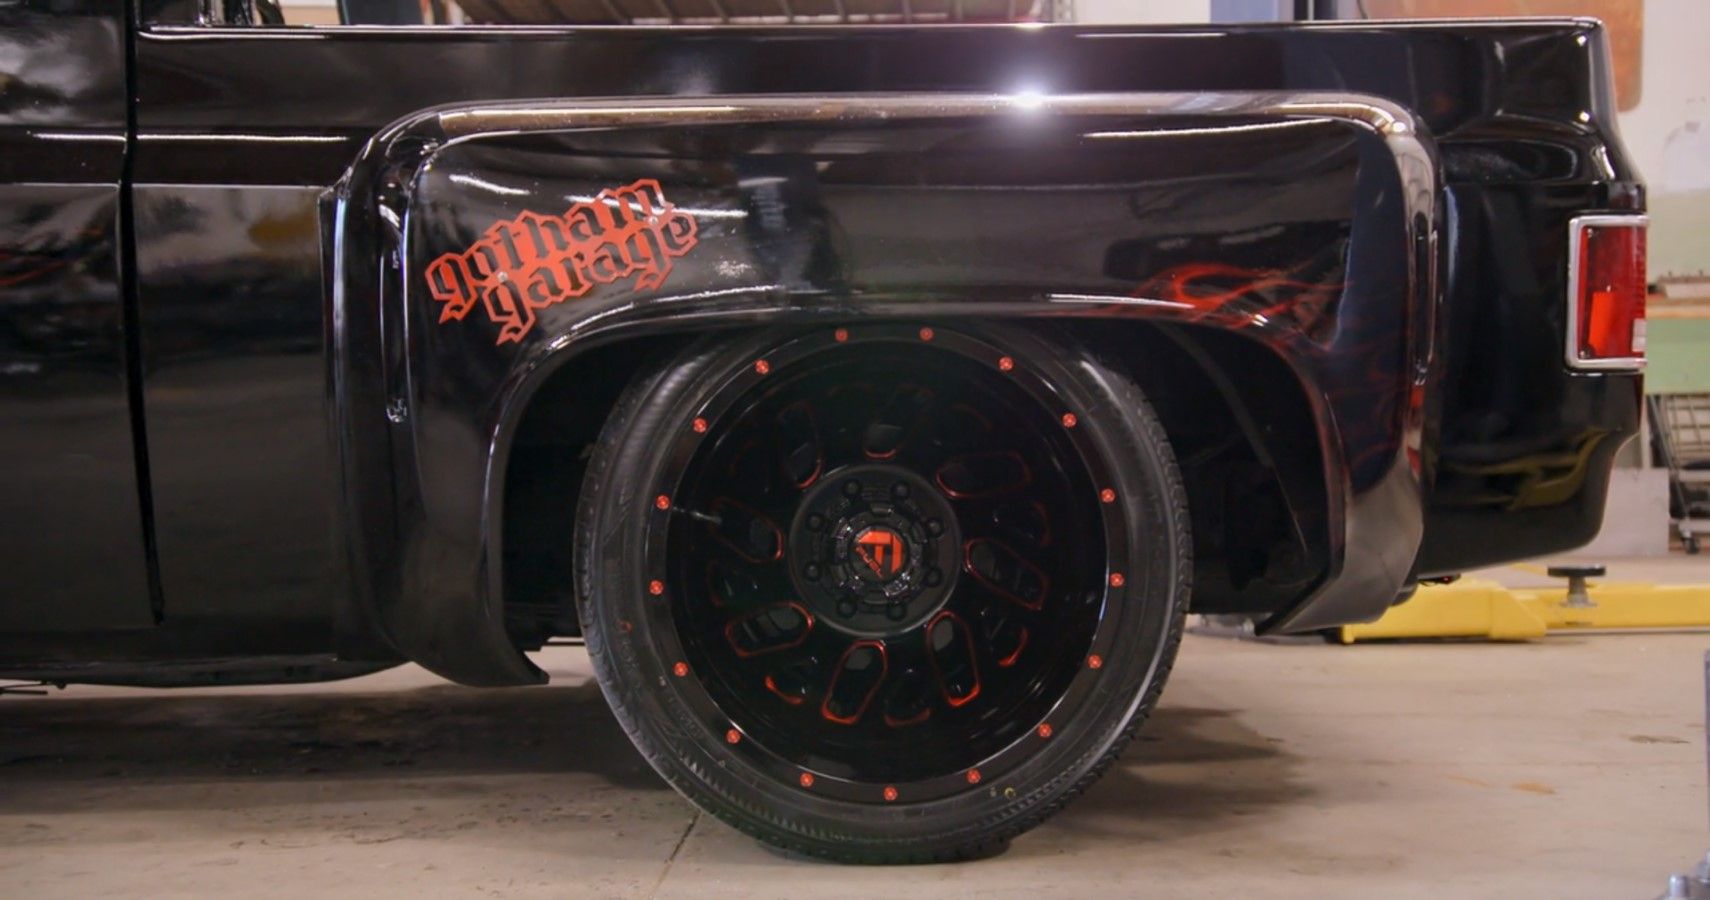 1980s Chevy Blazer Gothic build by Gotham Garage rear wheel close-up view